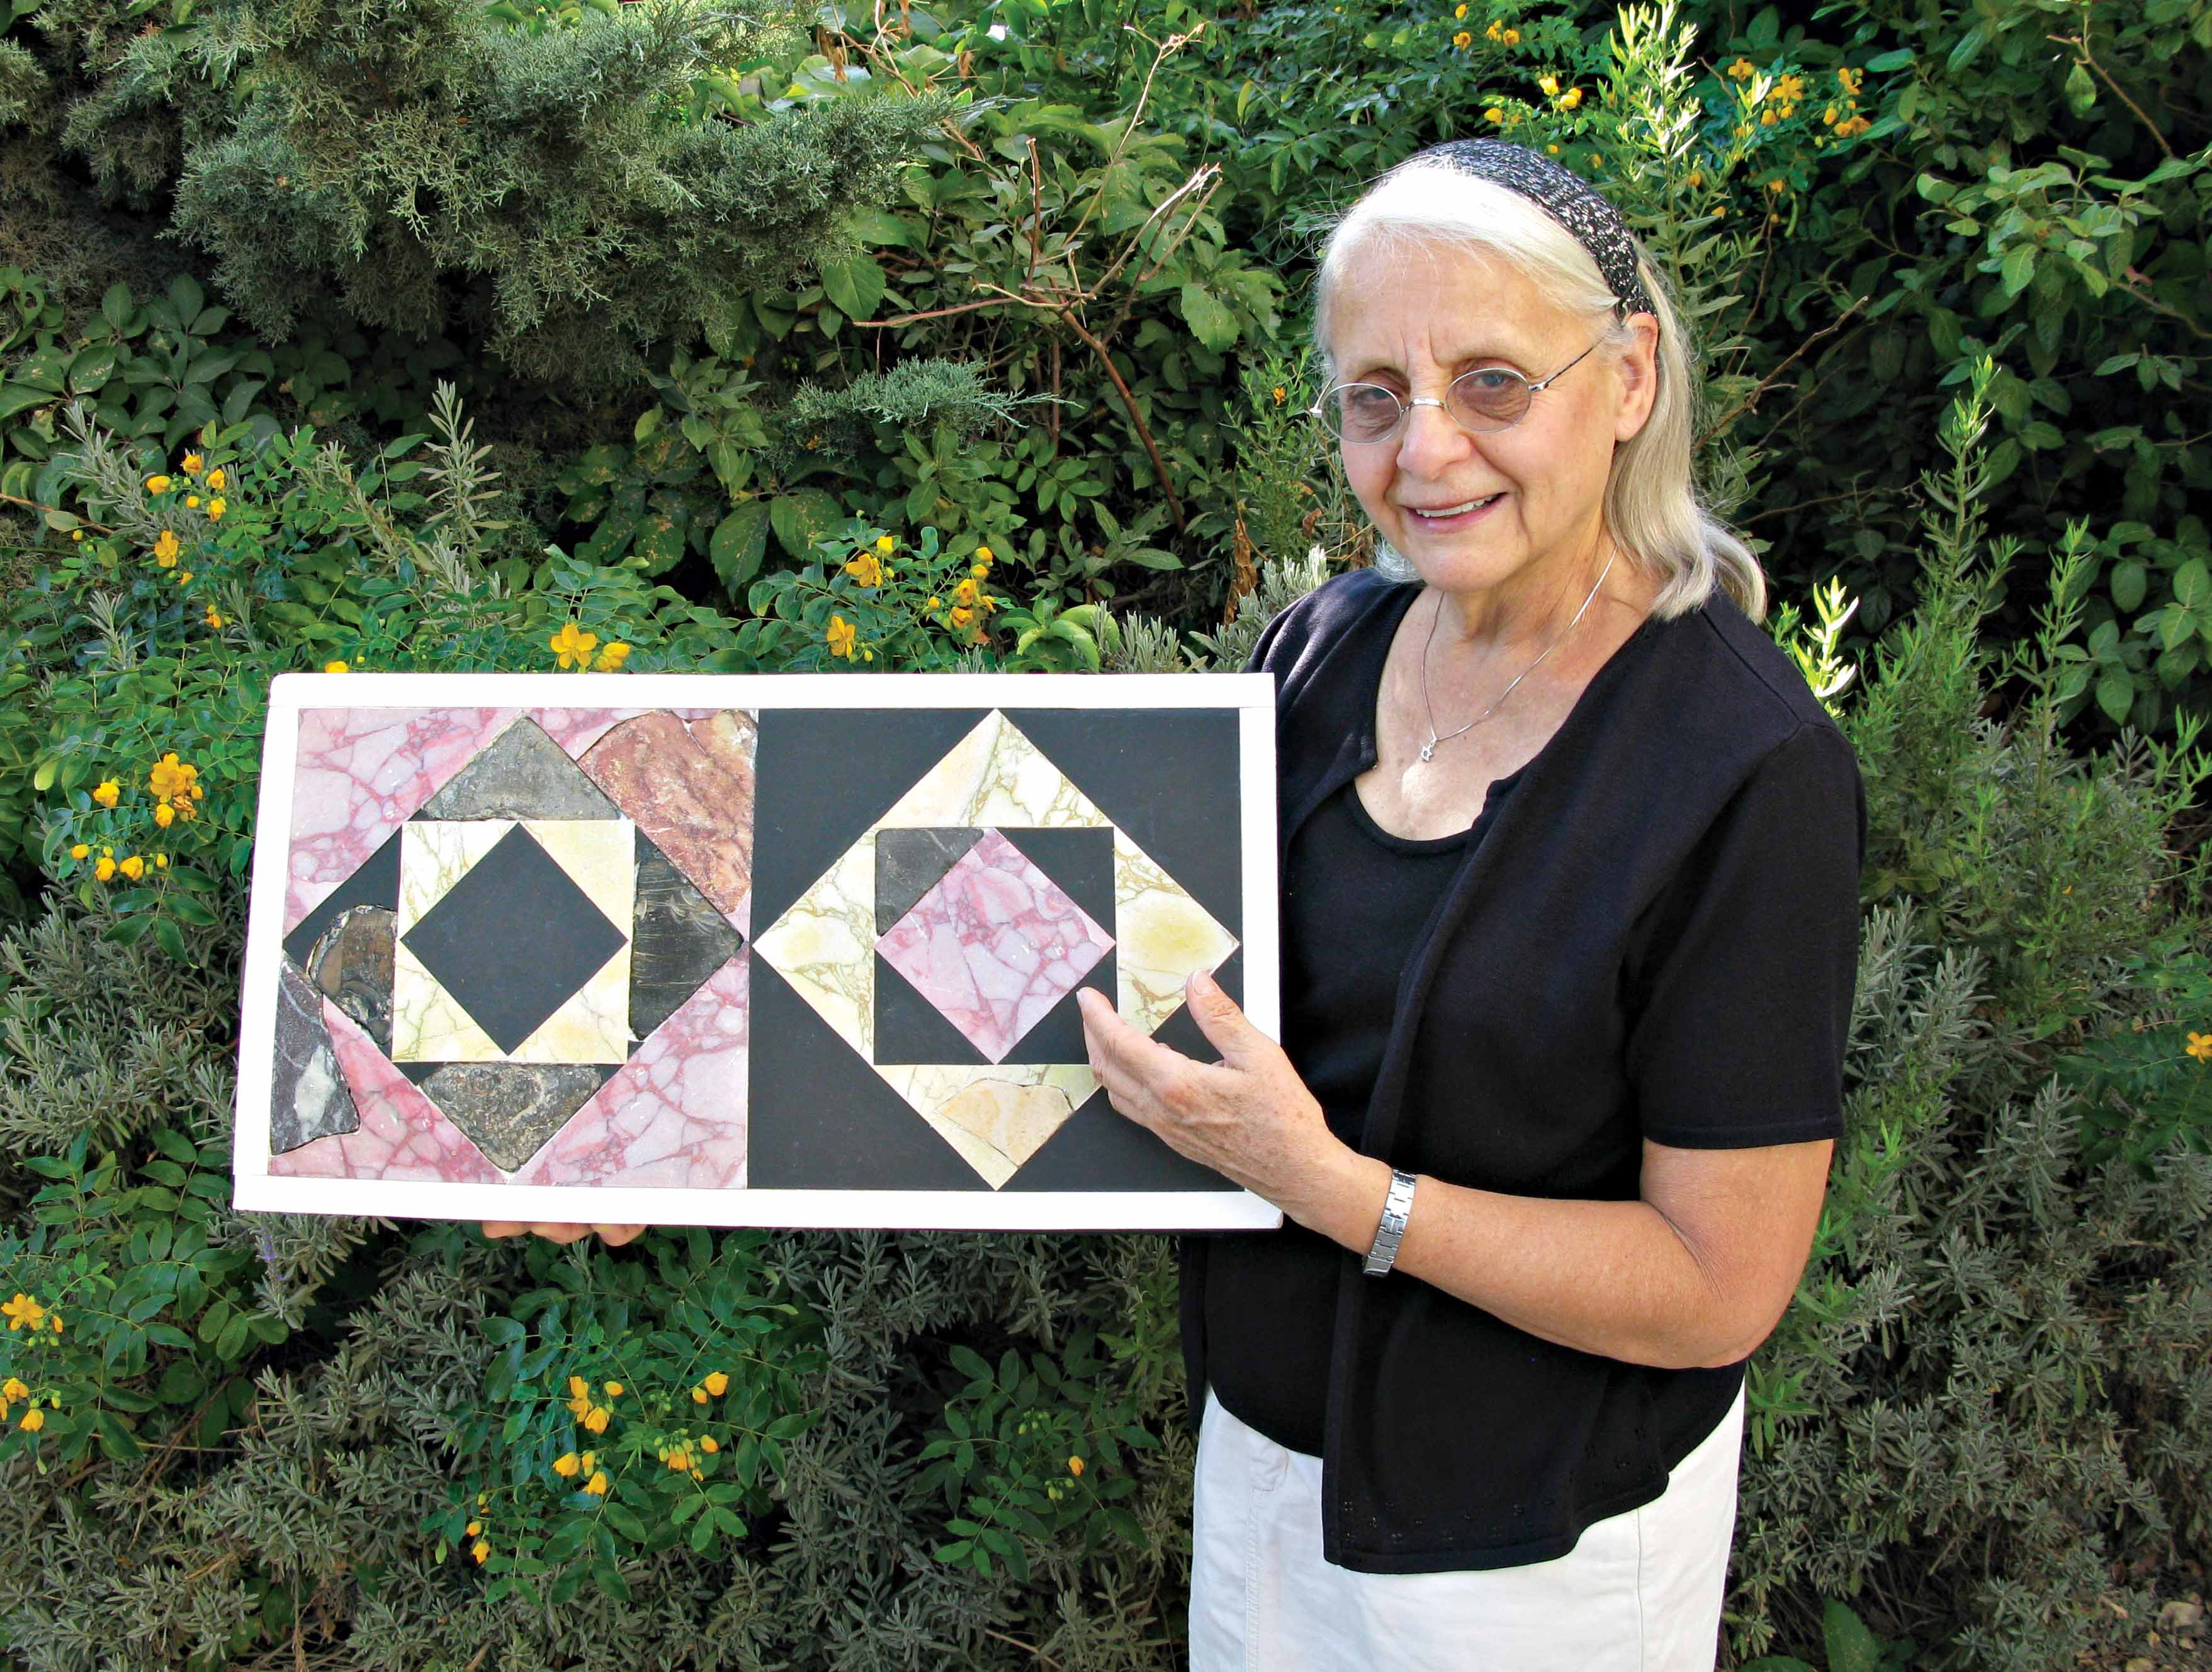 פרנקי שניידר מחזיקה שחזור משוער של רצפת הר הבית שיצרה בעזרת ממצאים שהתגלו בפרויקט סינון העפר מהר הבית